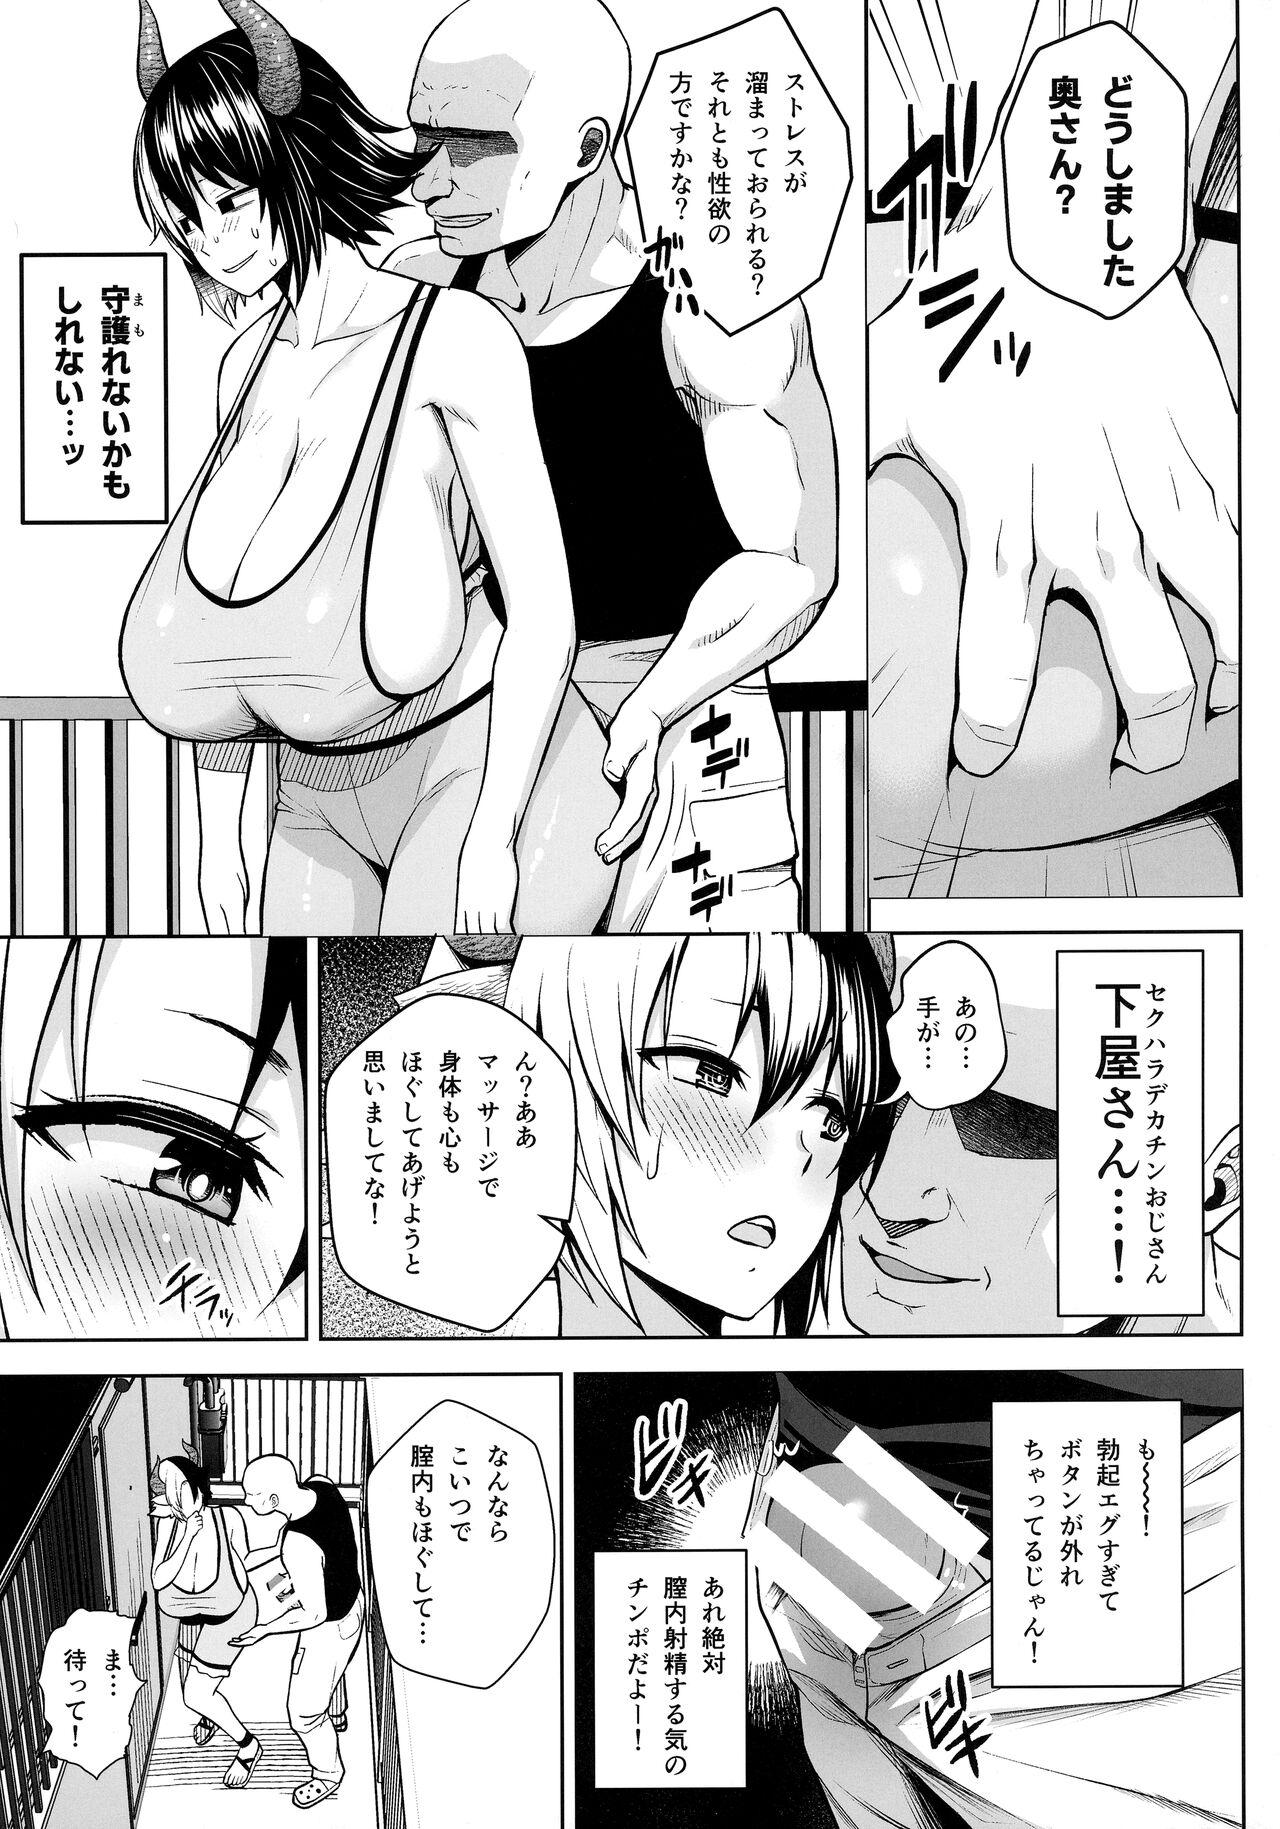 Affair Oku-san no Oppai ga Dekasugiru noga Warui! 6 - Touhou project Cock - Page 6